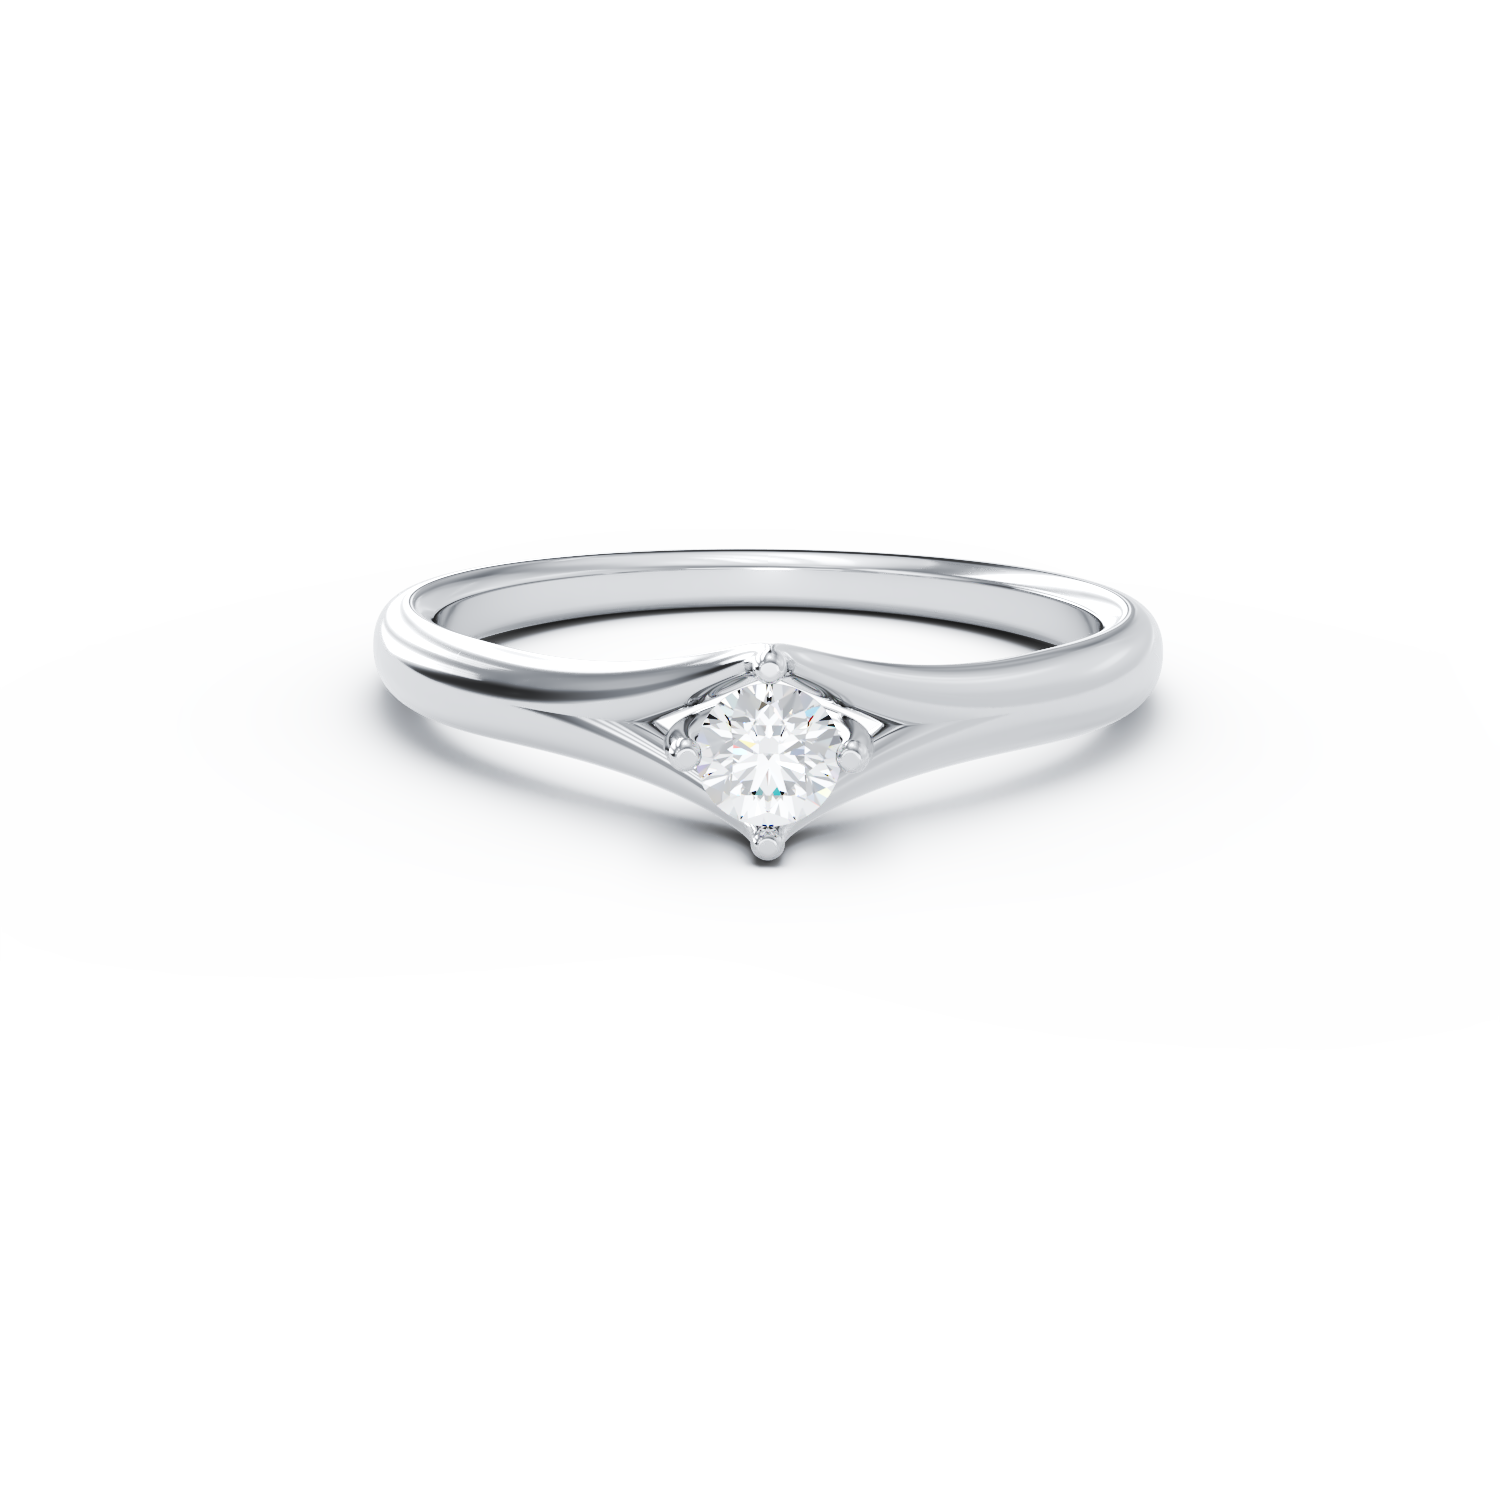 Poze Inel de logodna din aur alb de 18K cu un diamant solitaire de 0.25ct